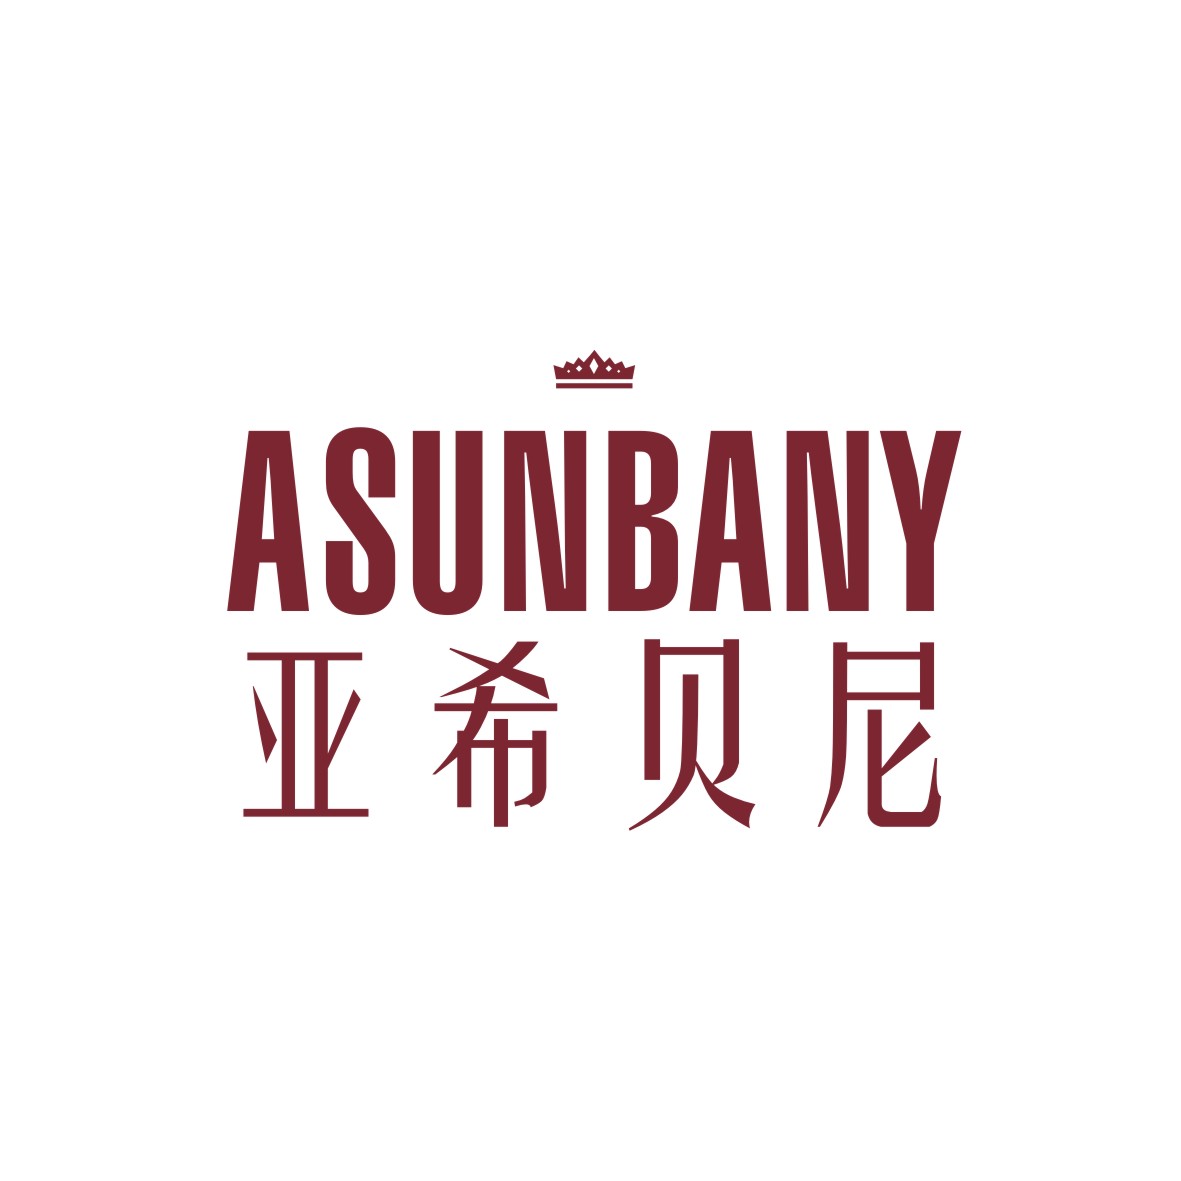 广州知麦网络科技有限公司商标亚希贝尼 ASUNBANY（18类）商标买卖平台报价，上哪个平台最省钱？